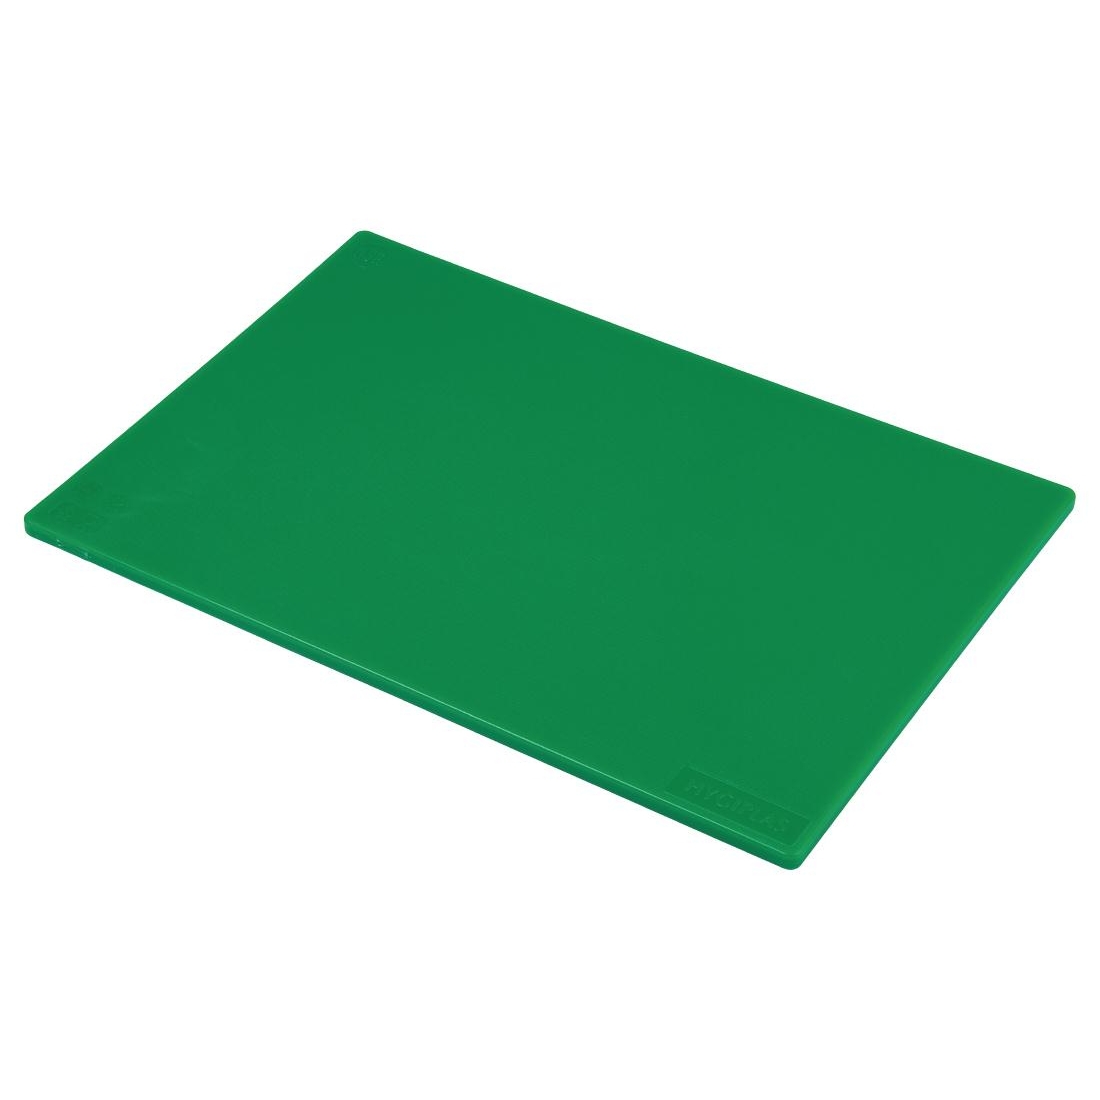 Hygiplas Standard Low Density Green Chopping Board